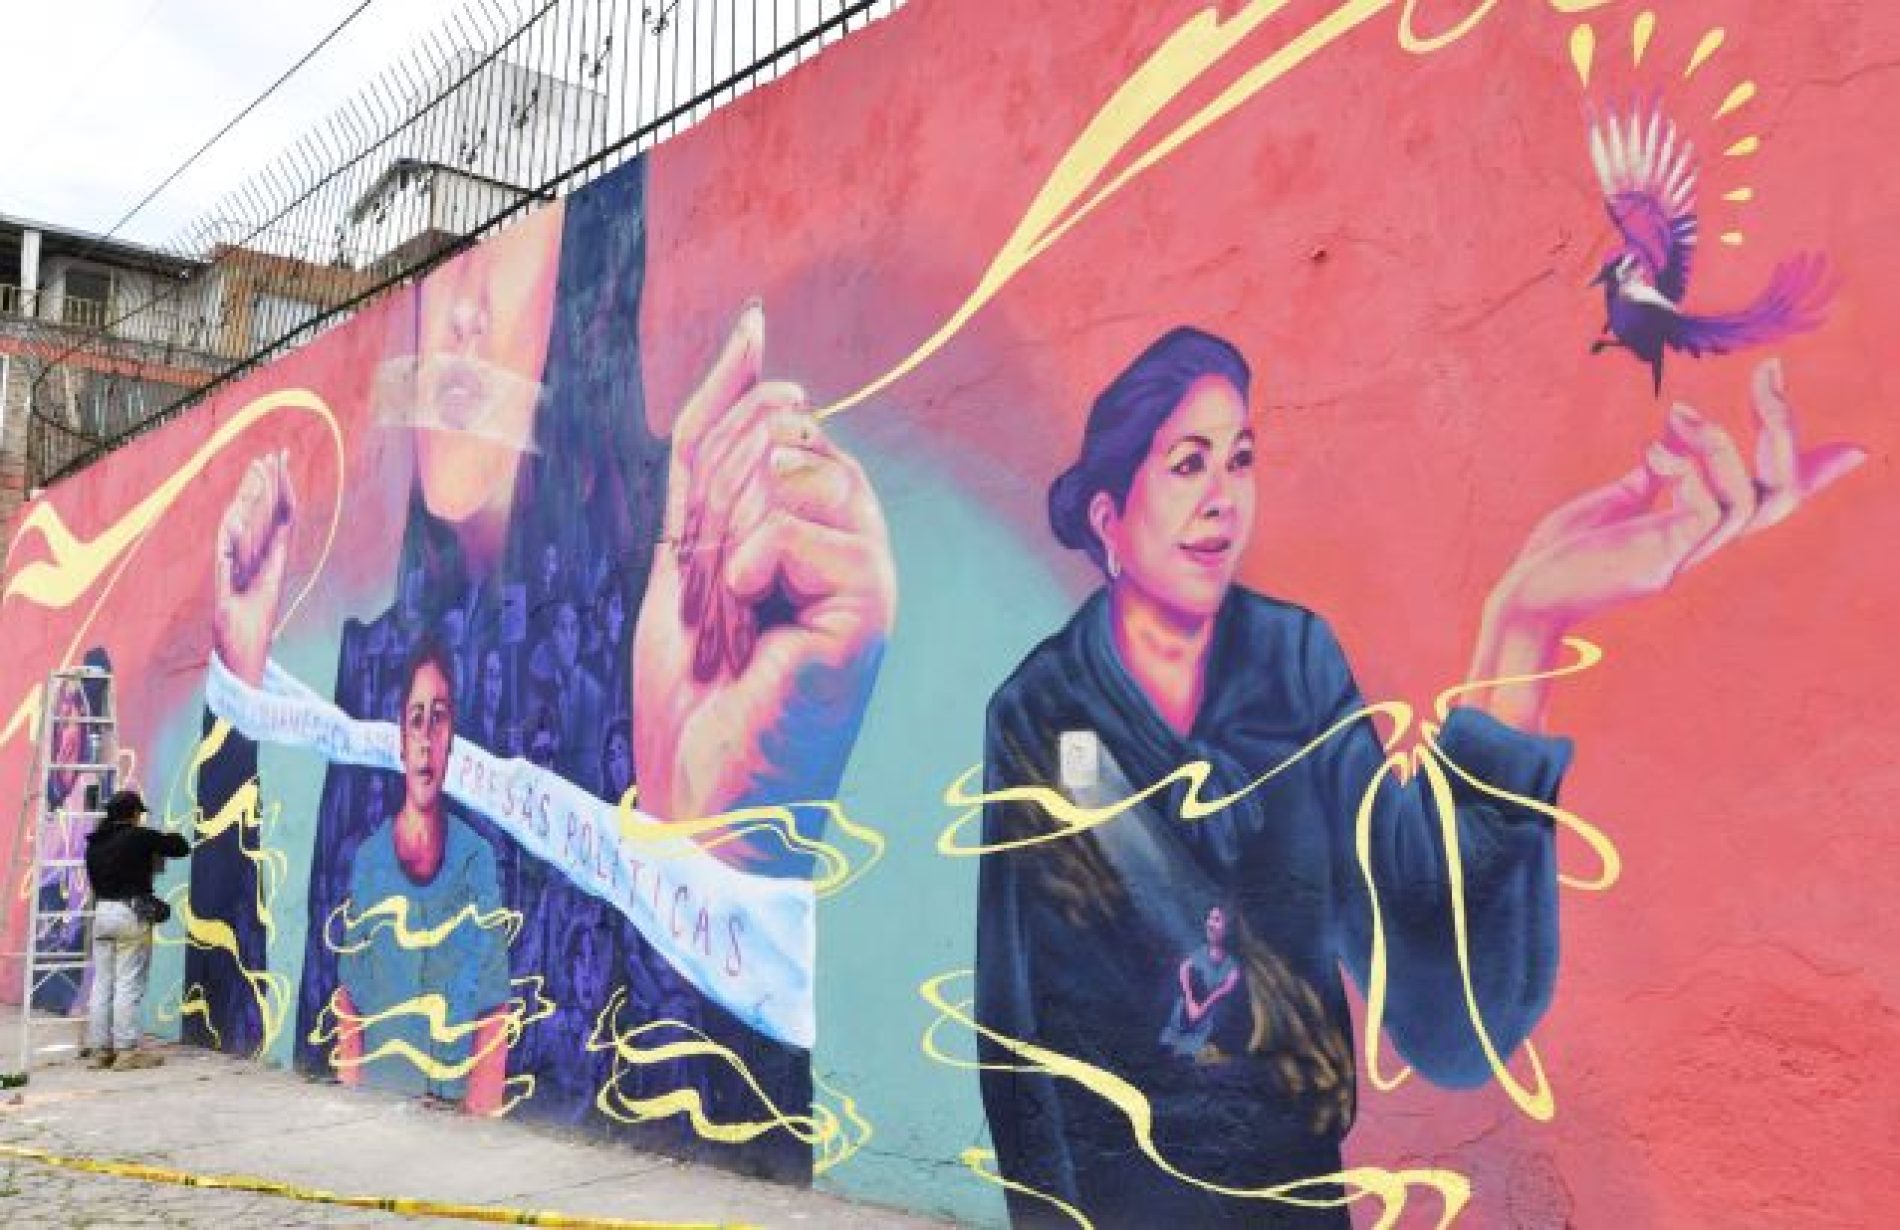 El arte mural se toma las calles para alzar la voz por las presas políticas de LATAM